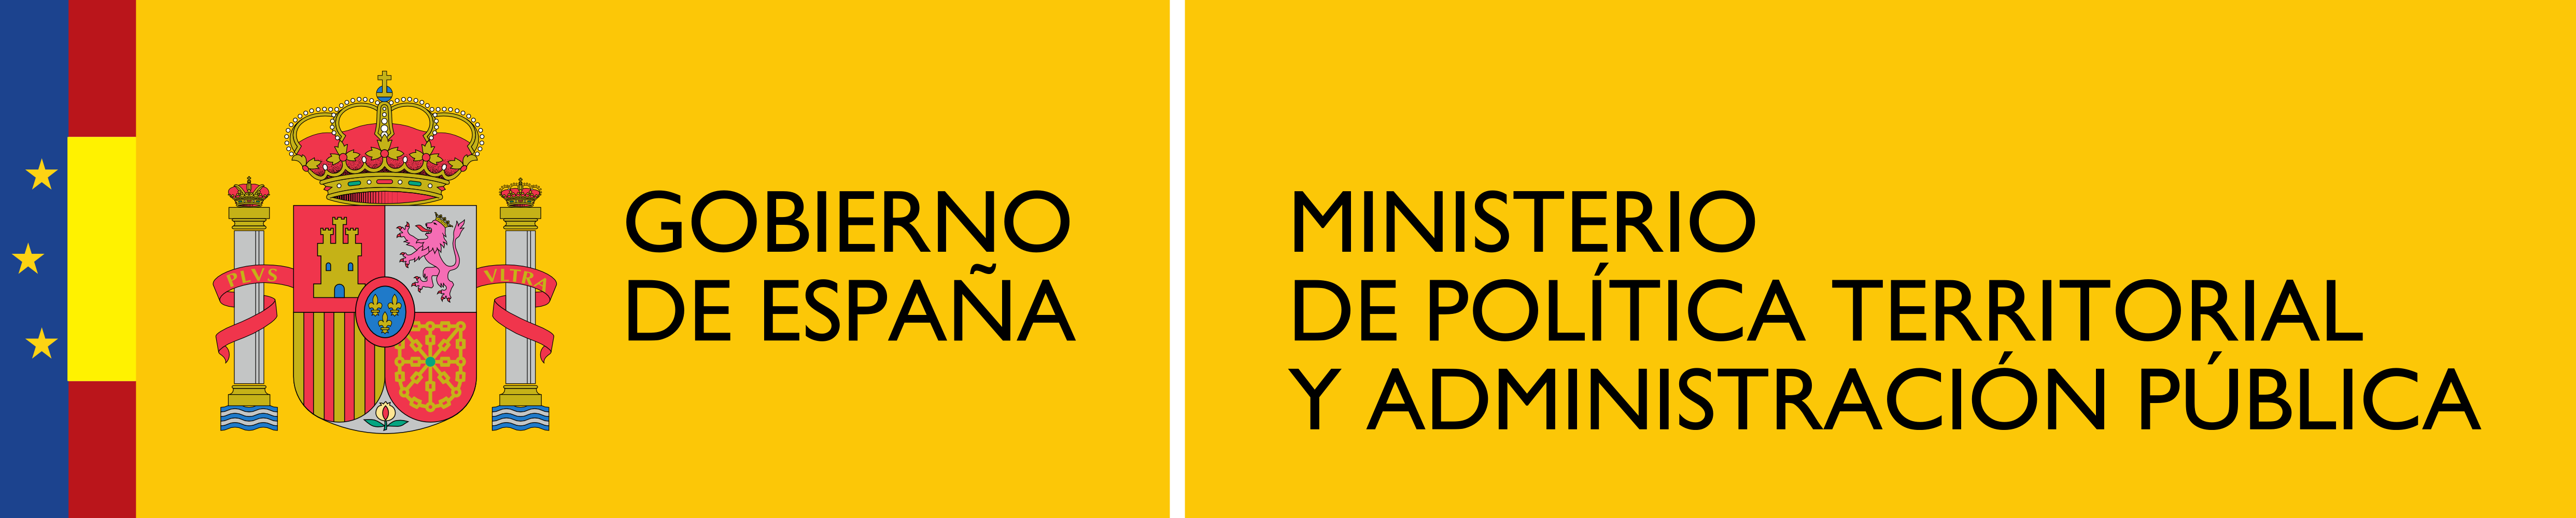 Ministerio de Política Territorial y Función Pública